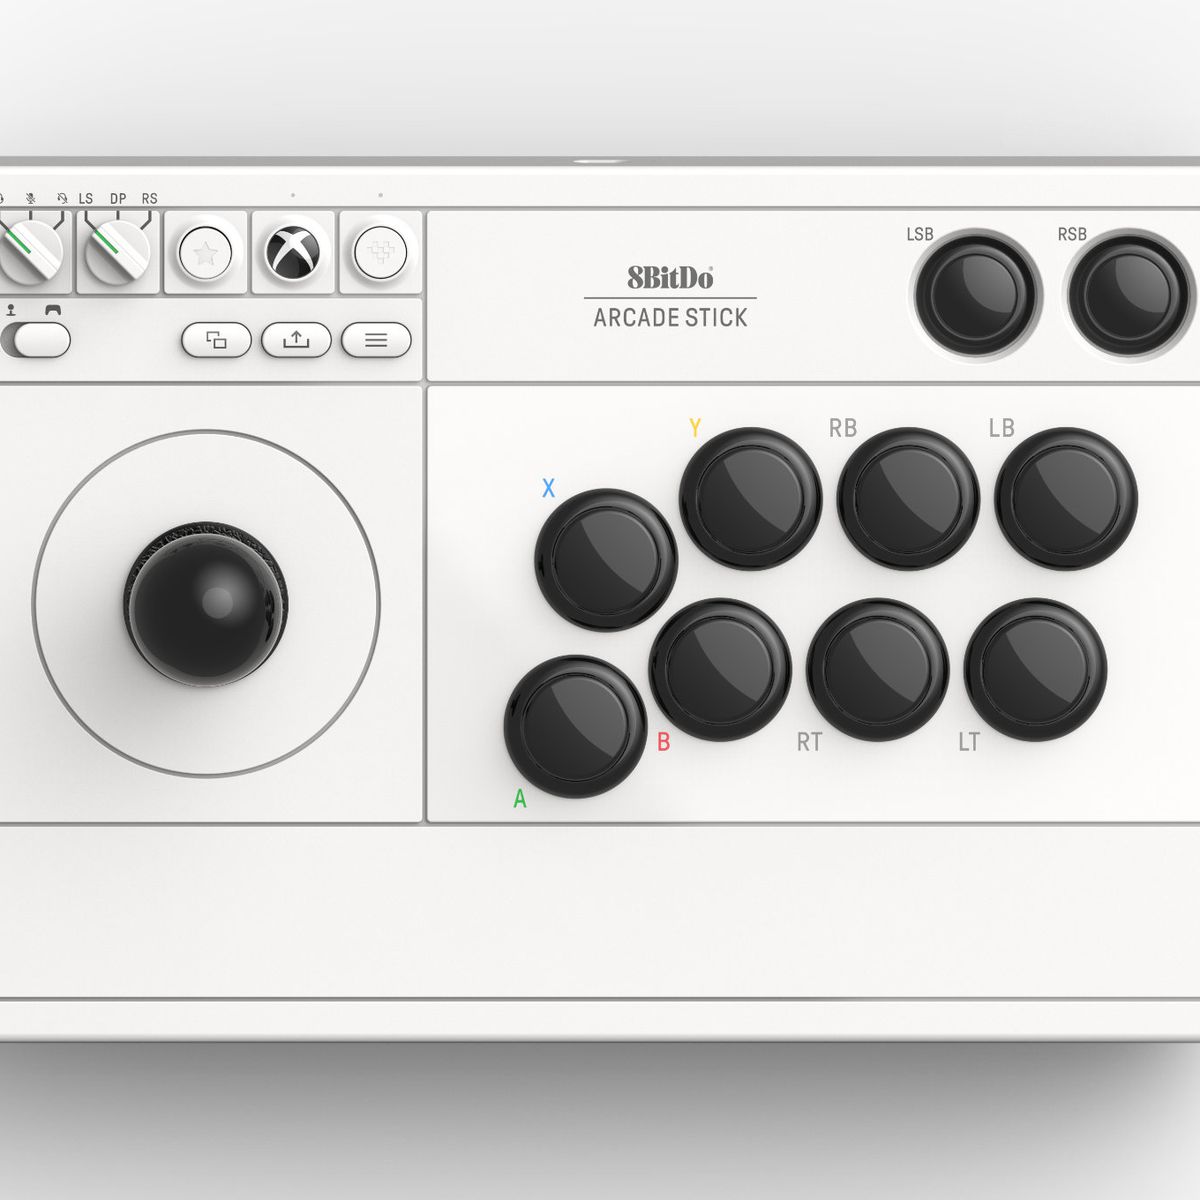 Le 8BitDo Arcade Stick blanc pour Xbox avec des boutons noirs.